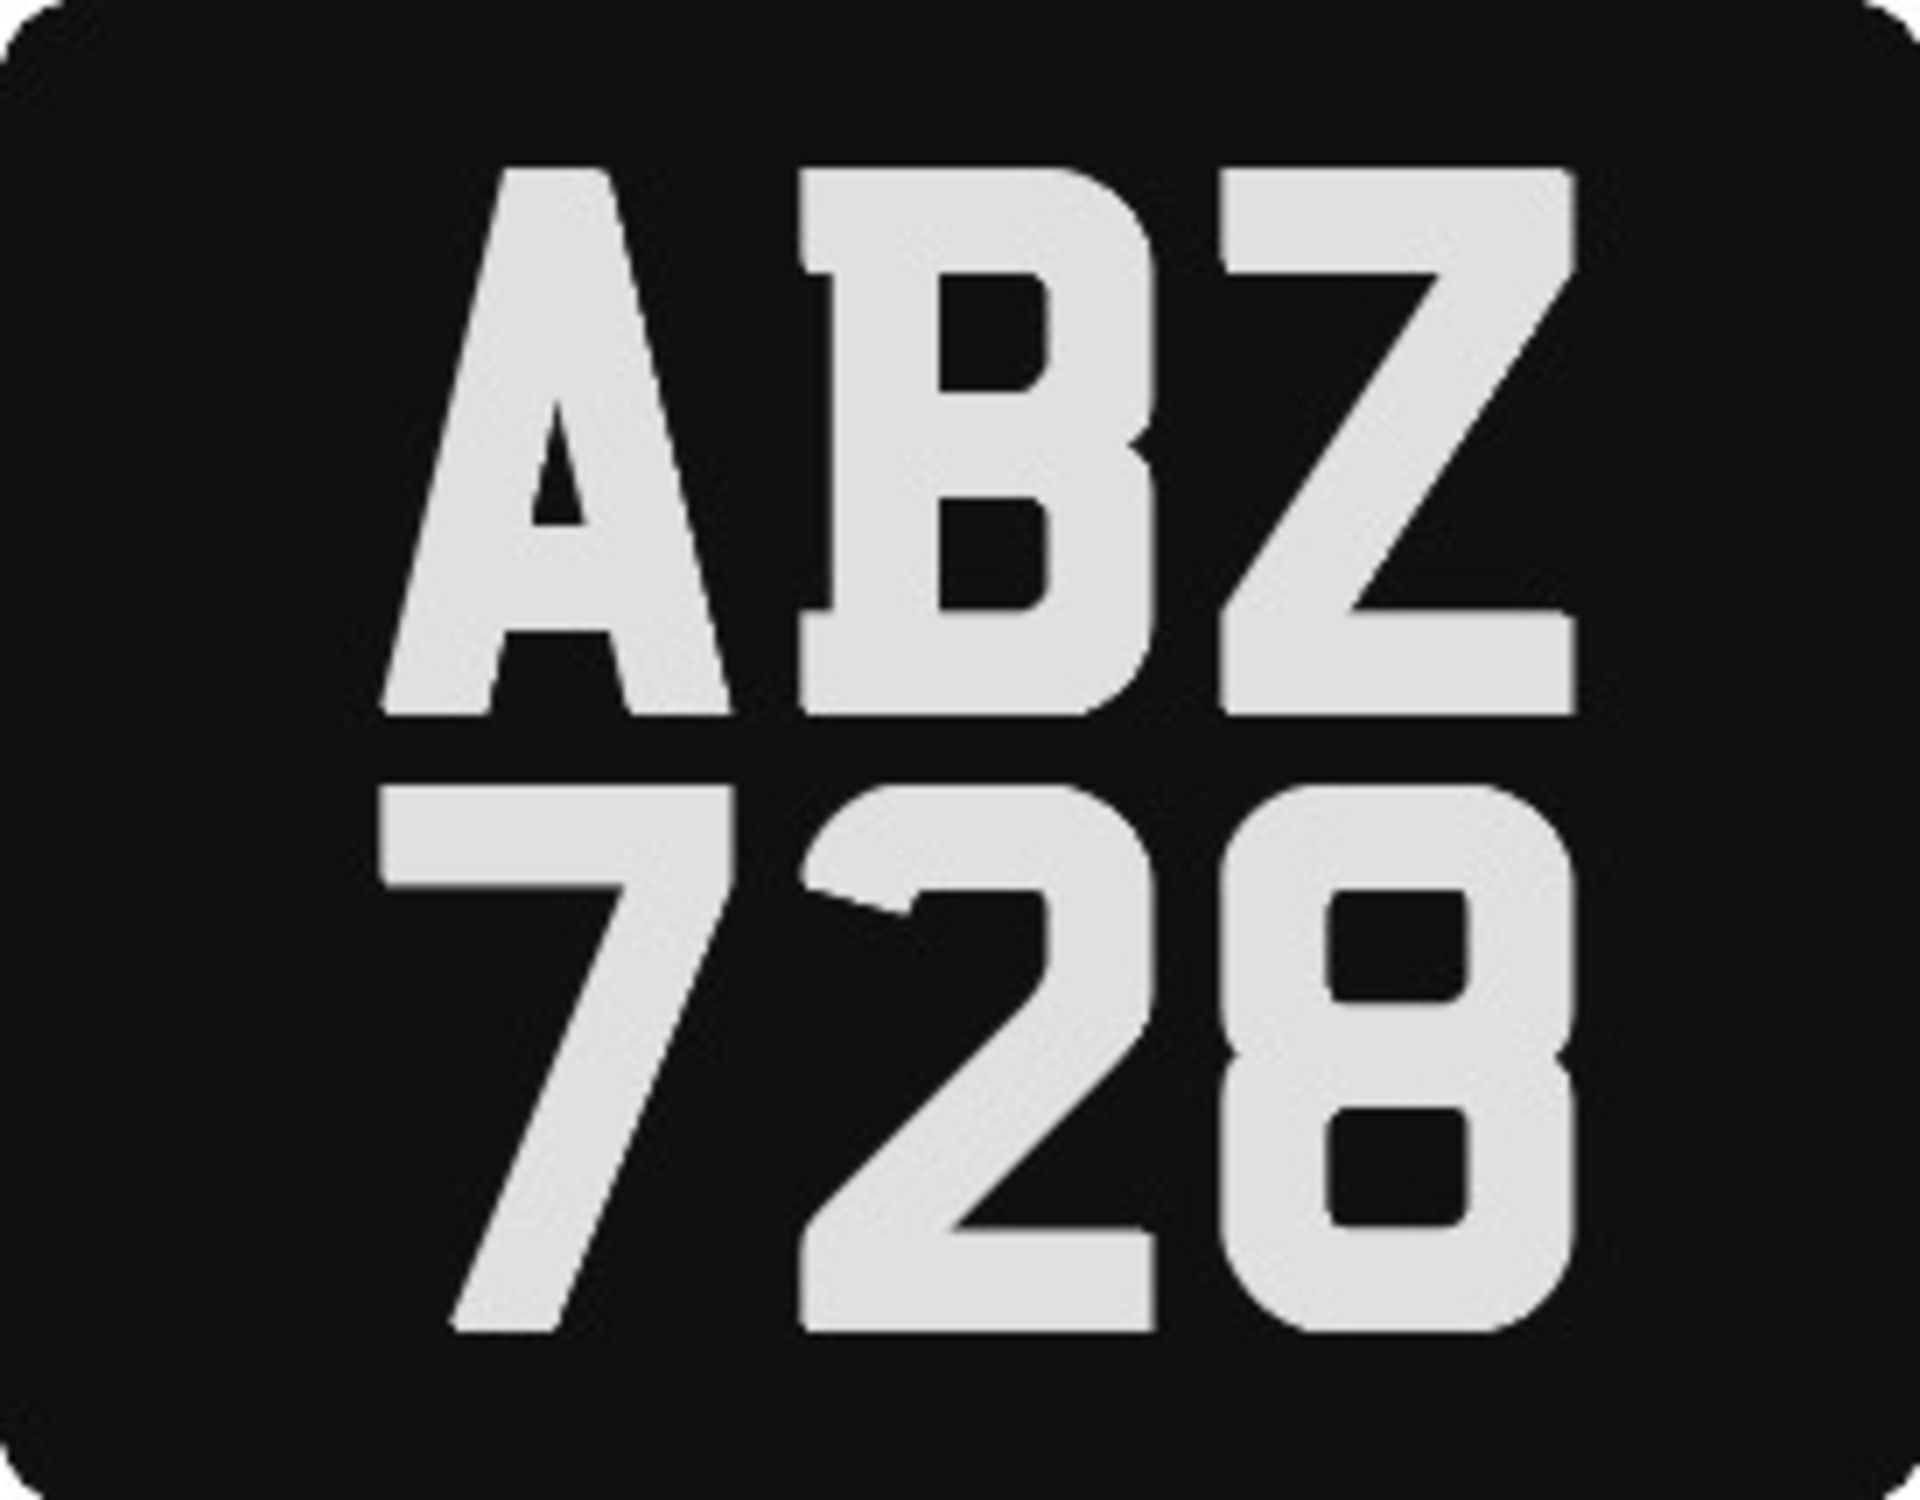 ABZ 728 Registration Number